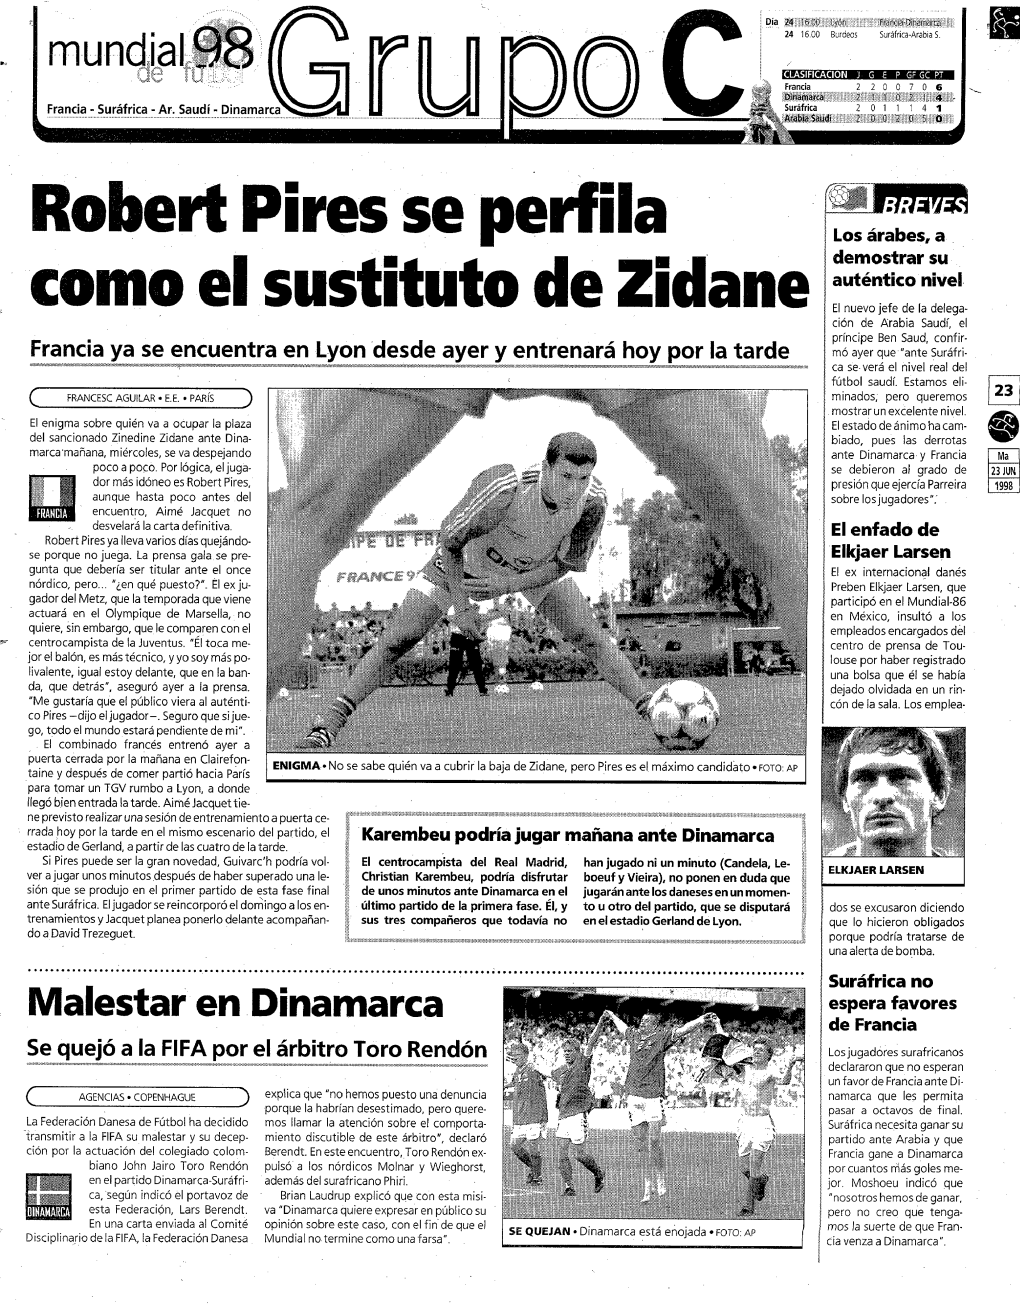 Robert Pires Se Perfila Como El Sustituto De Zidane